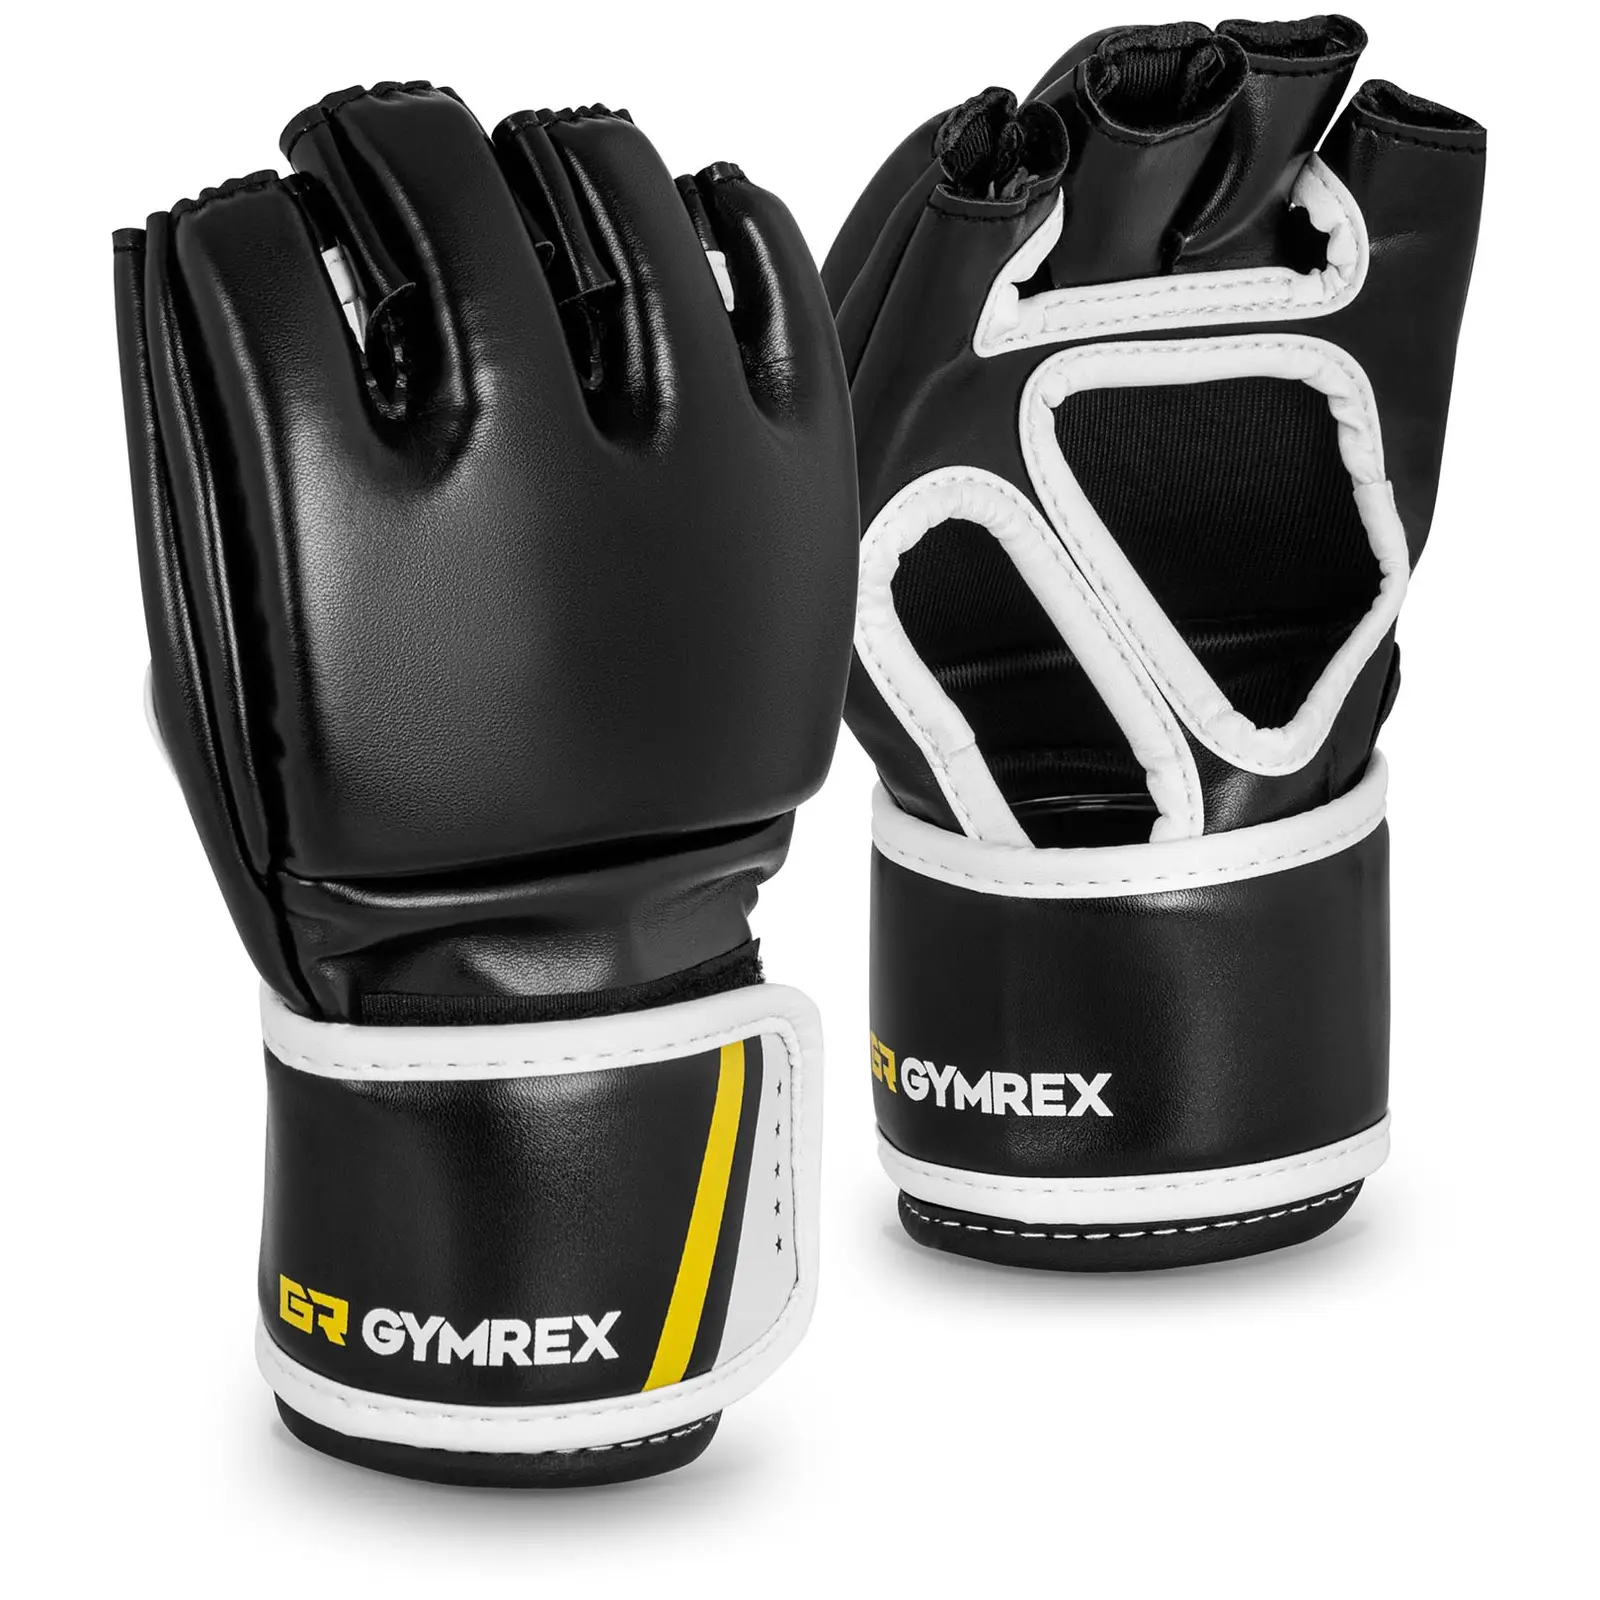 MMA Handschuhe - Gr. L/XL - schwarz - ohne Daumen